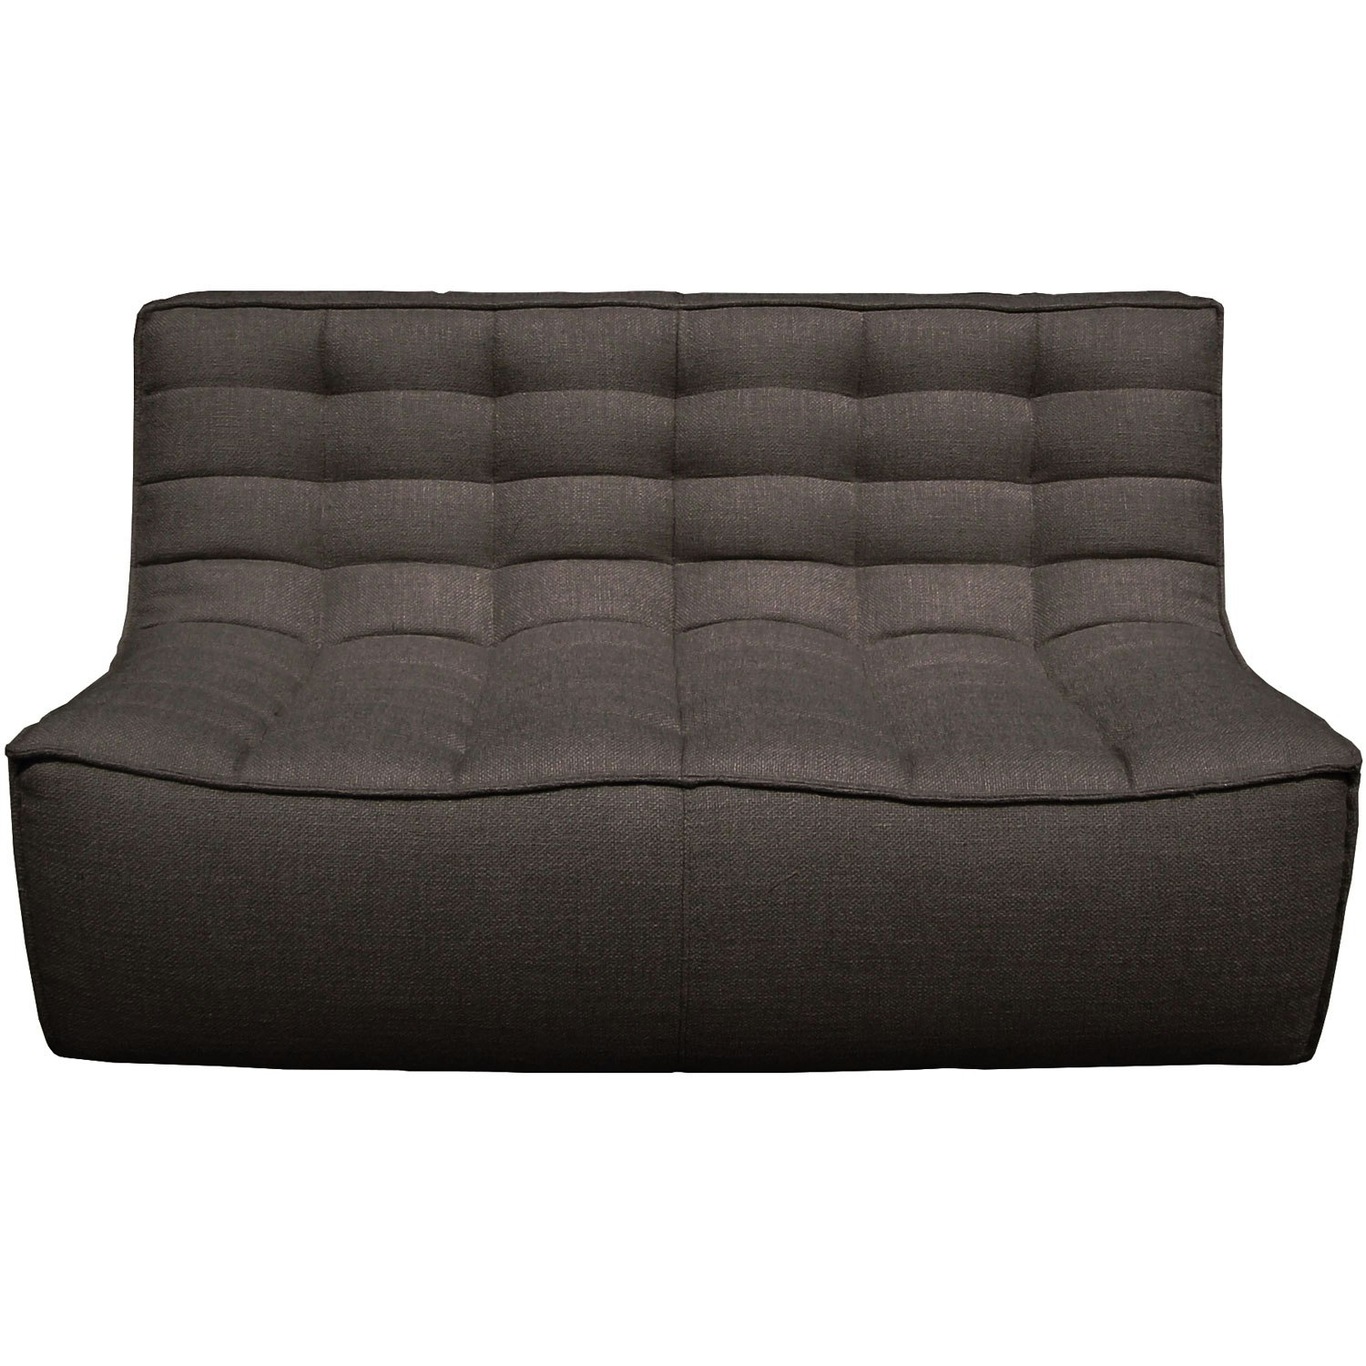 N701 Sofa, Dark grey 2-Seater